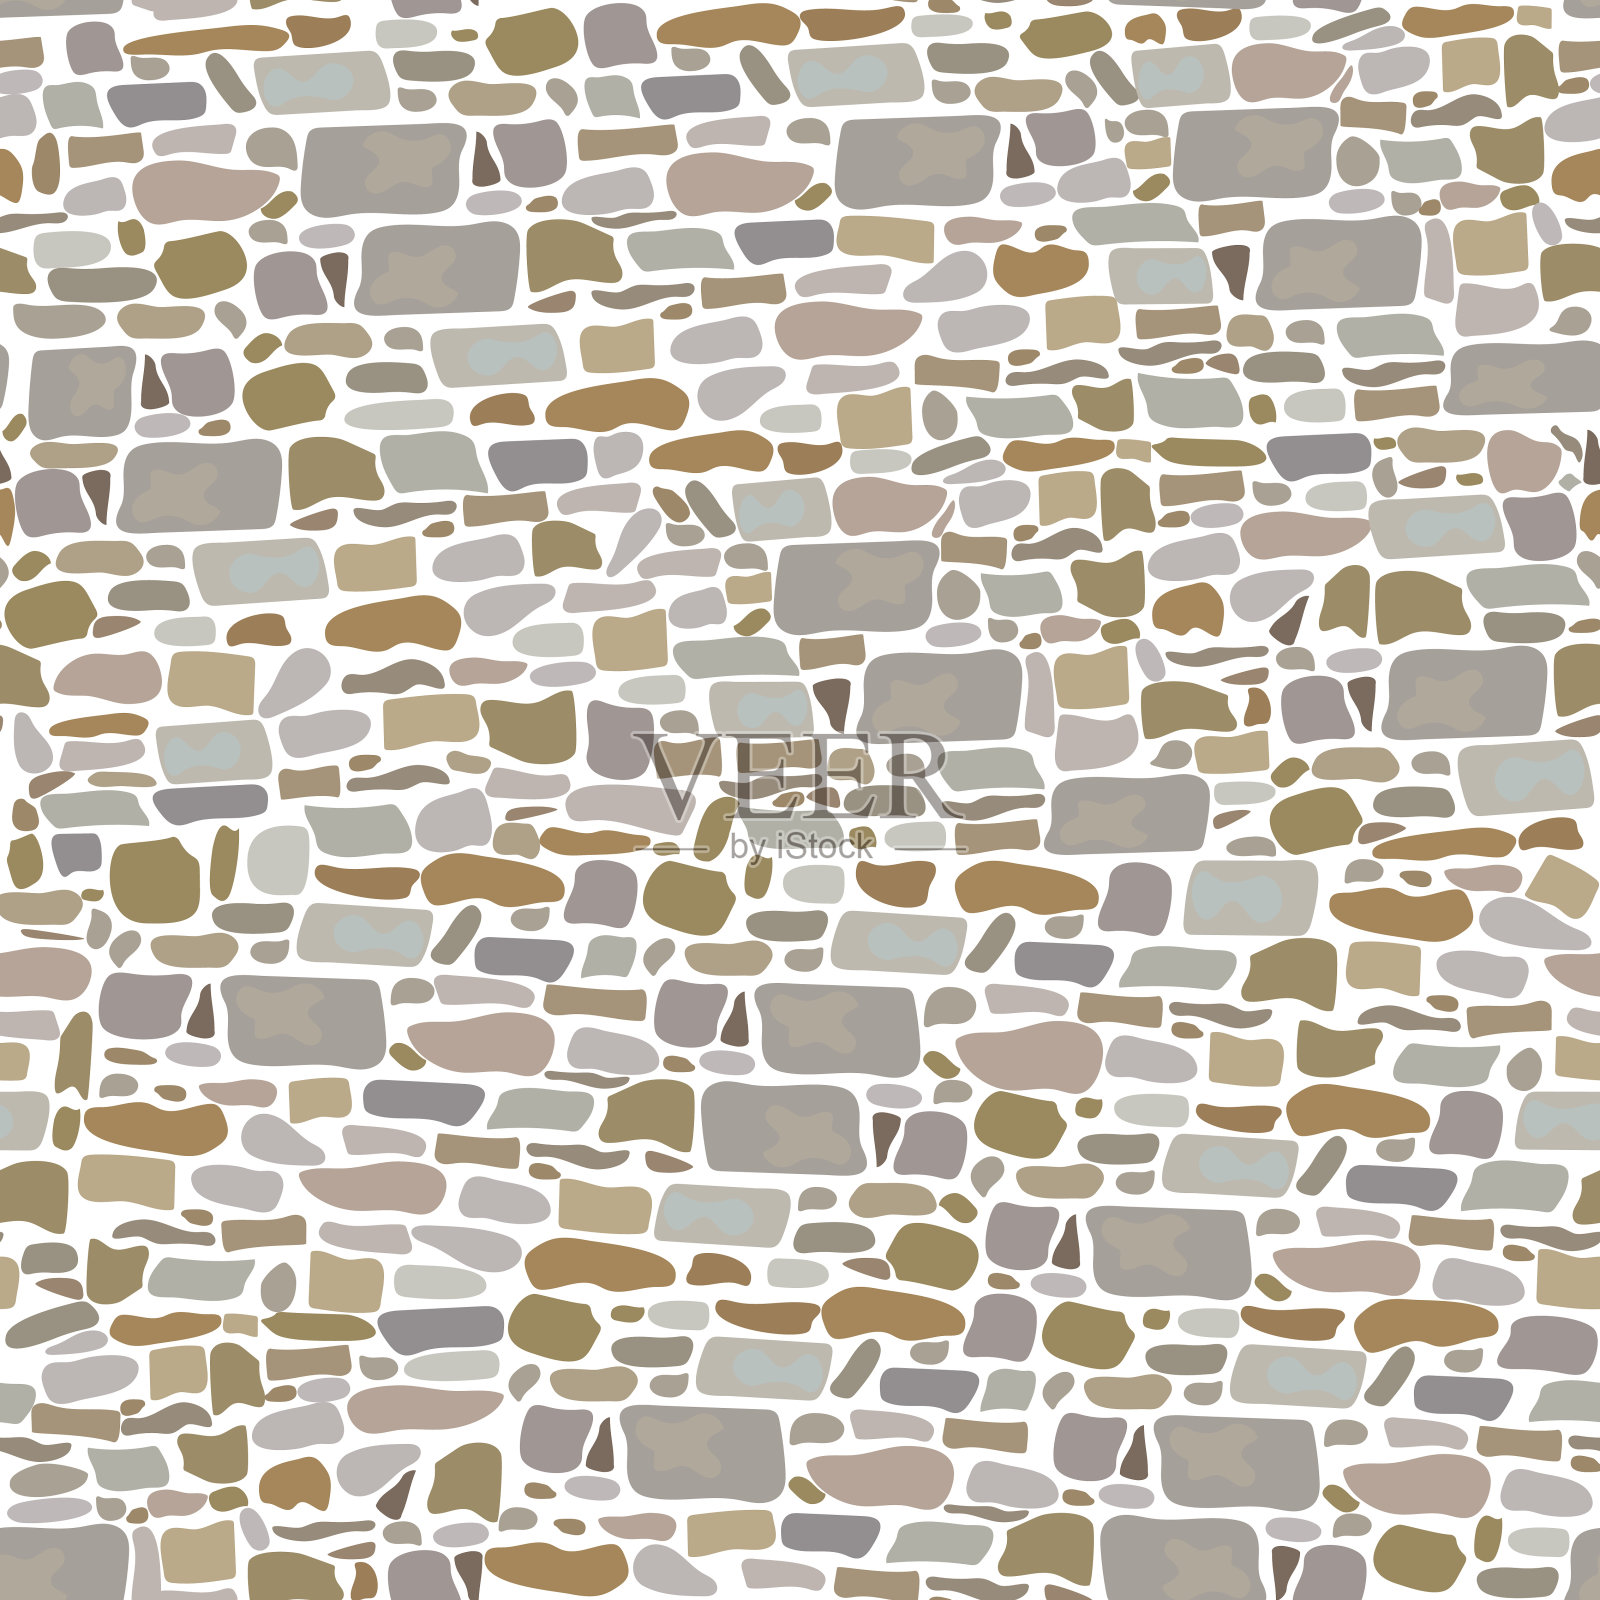 石材砌块墙，无缝图案。背景由野生砖块制成。灰色，红色，沙子，黄色，棕色，插画图片素材